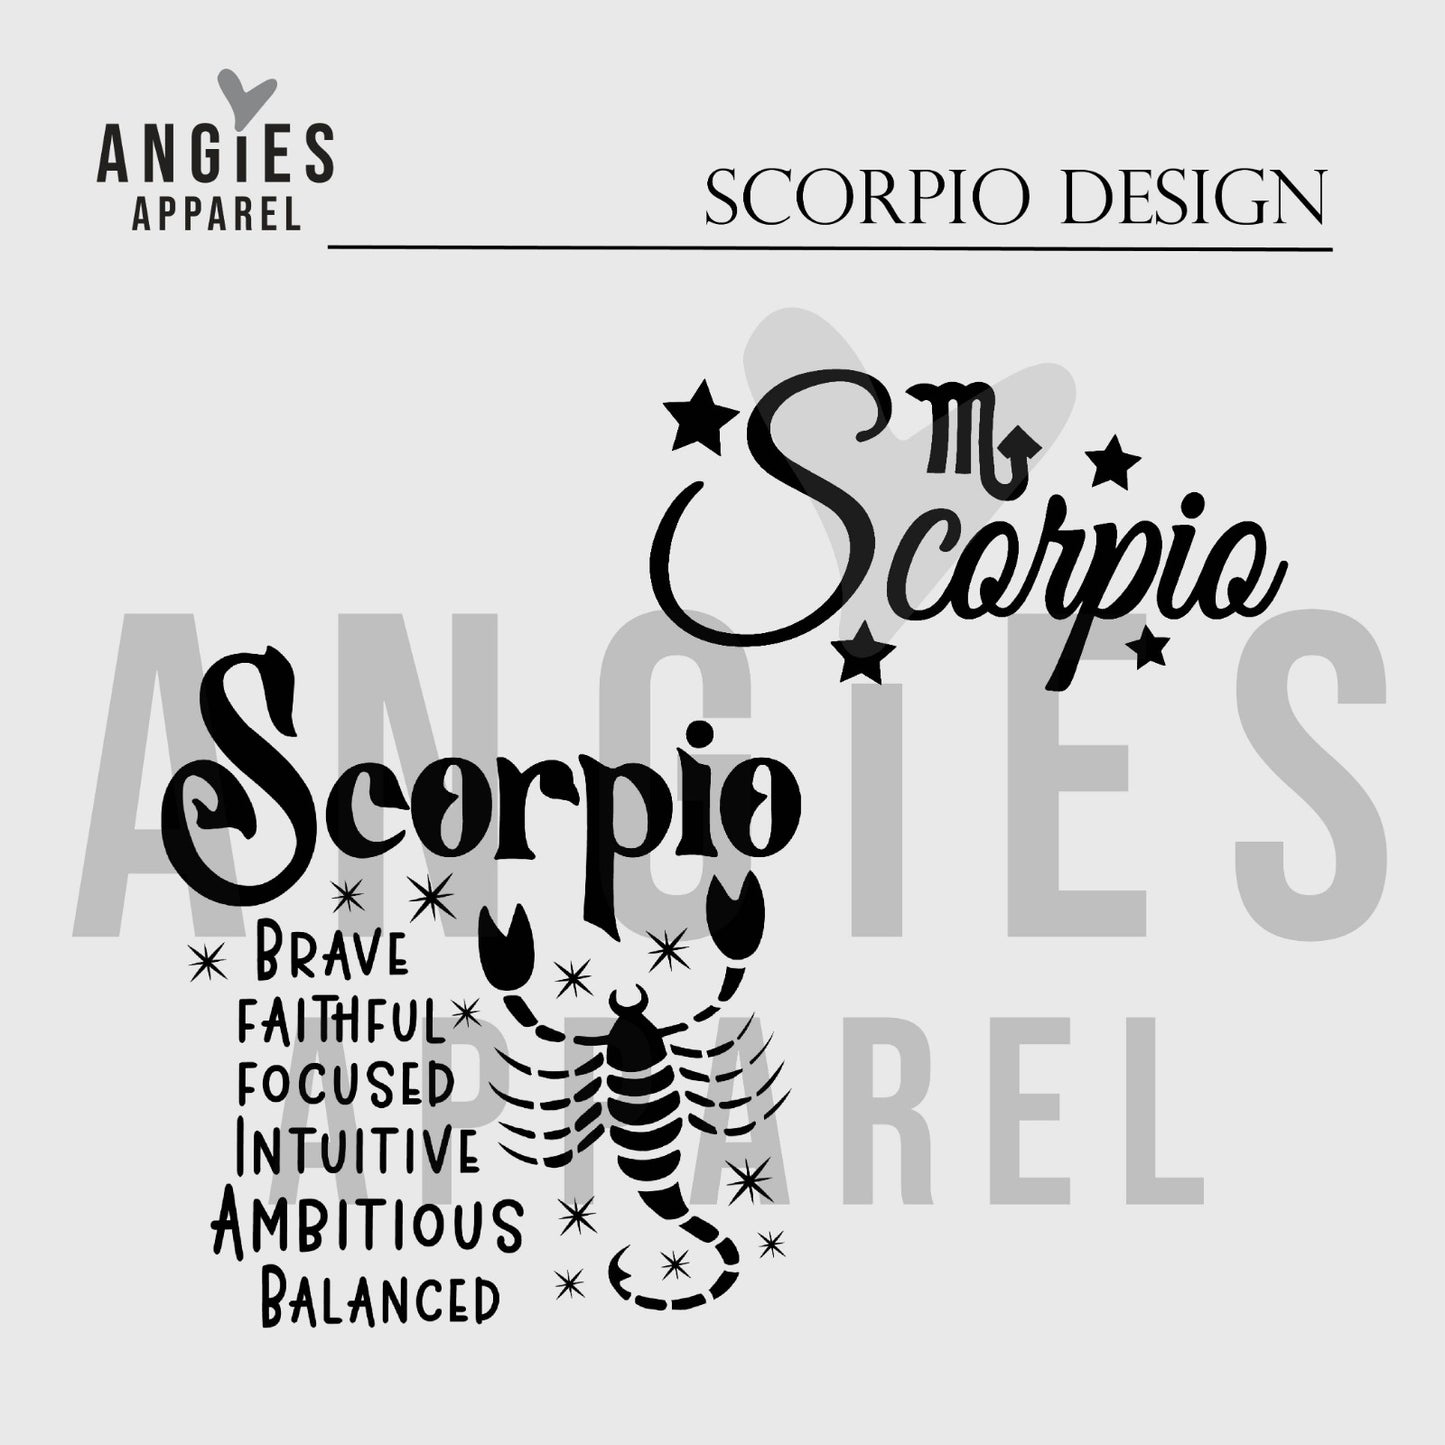 11. Scorpio